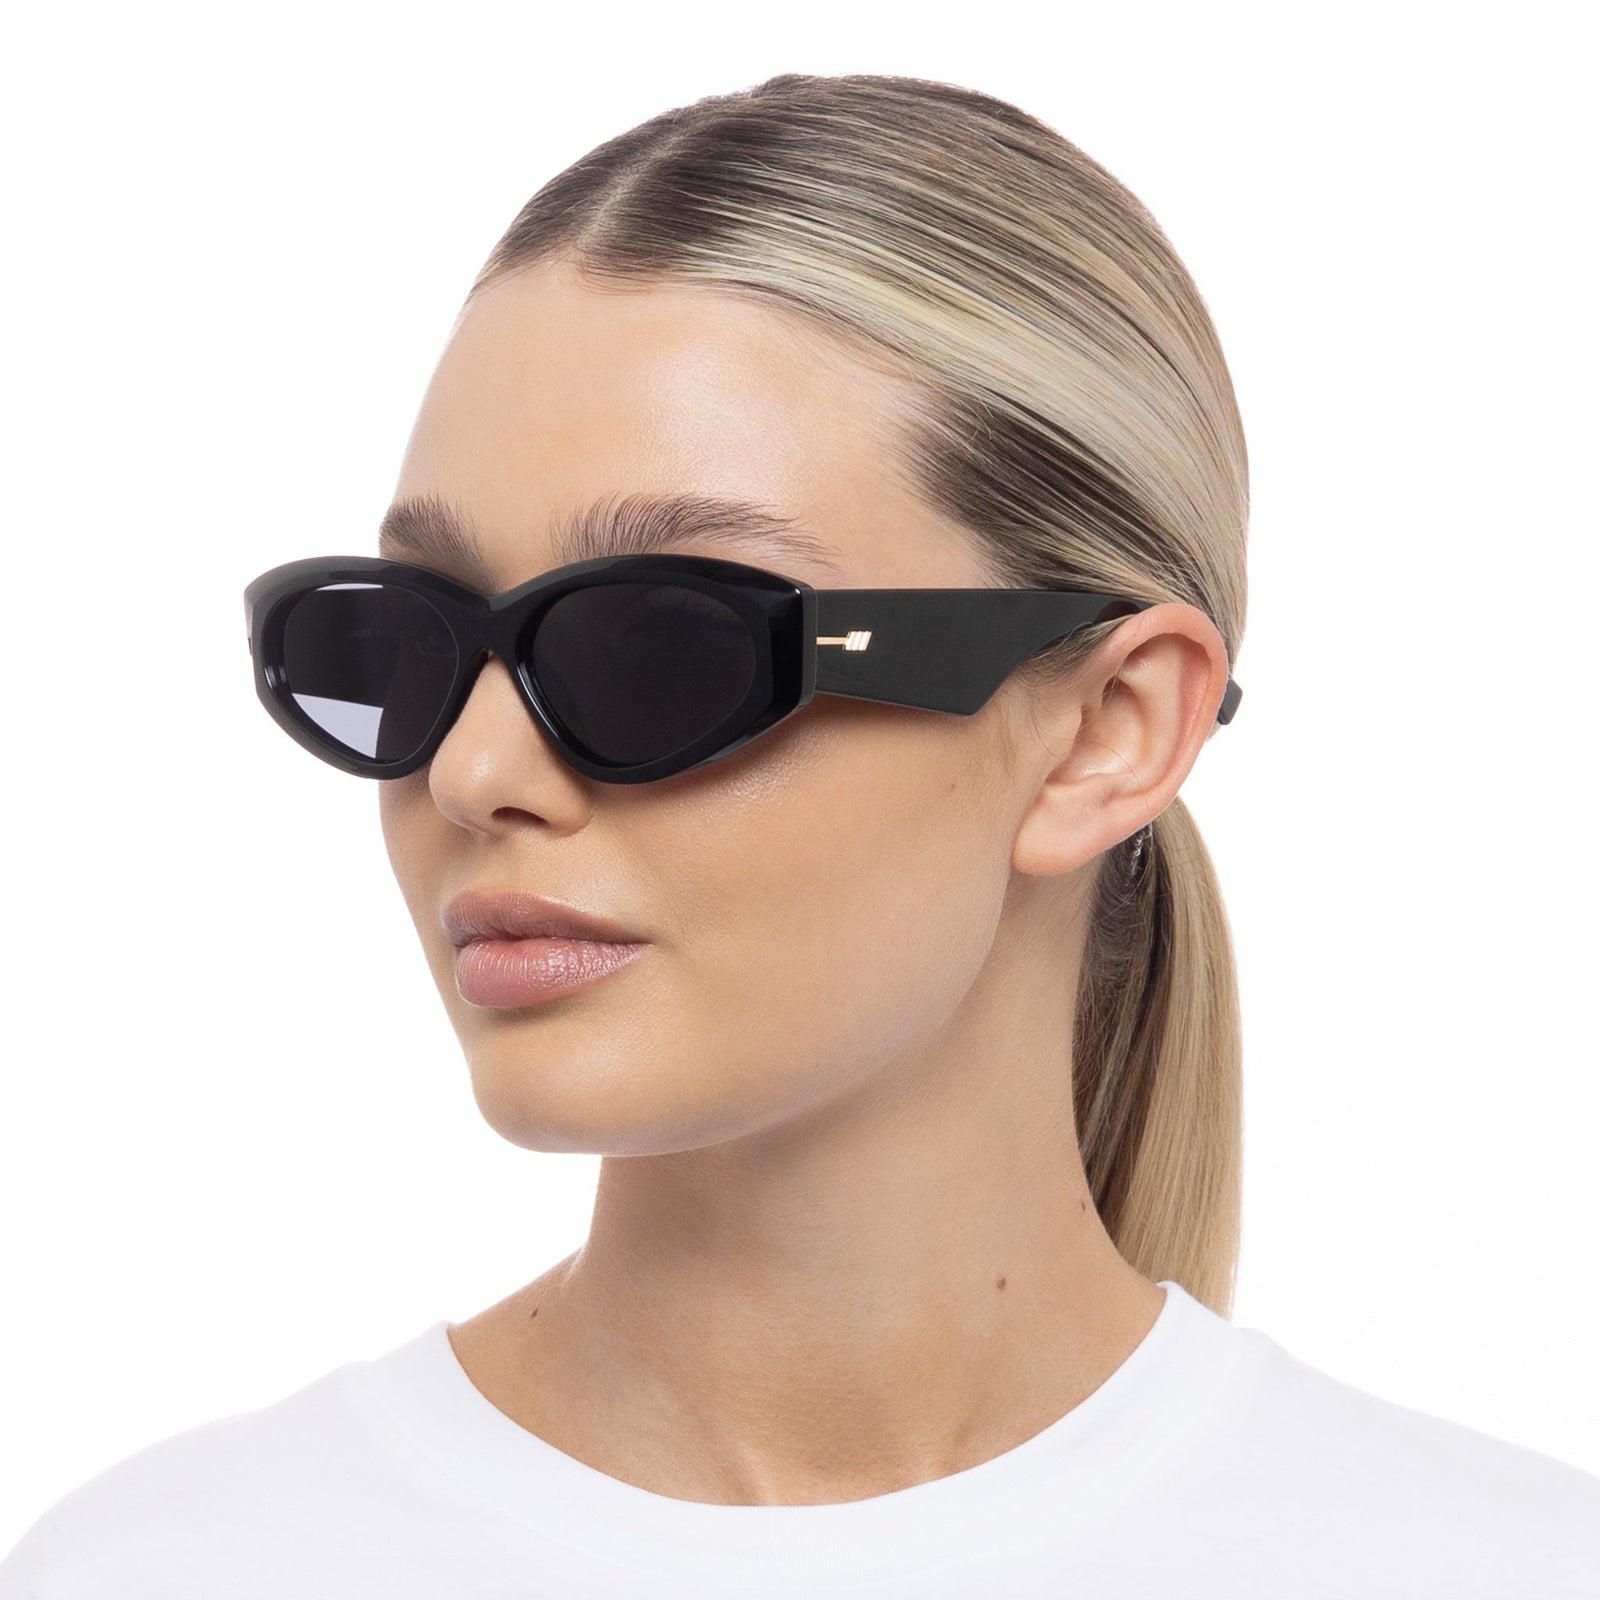 Sunglasses Wrap Under Black Specs Le | Wraps Uni-Sex